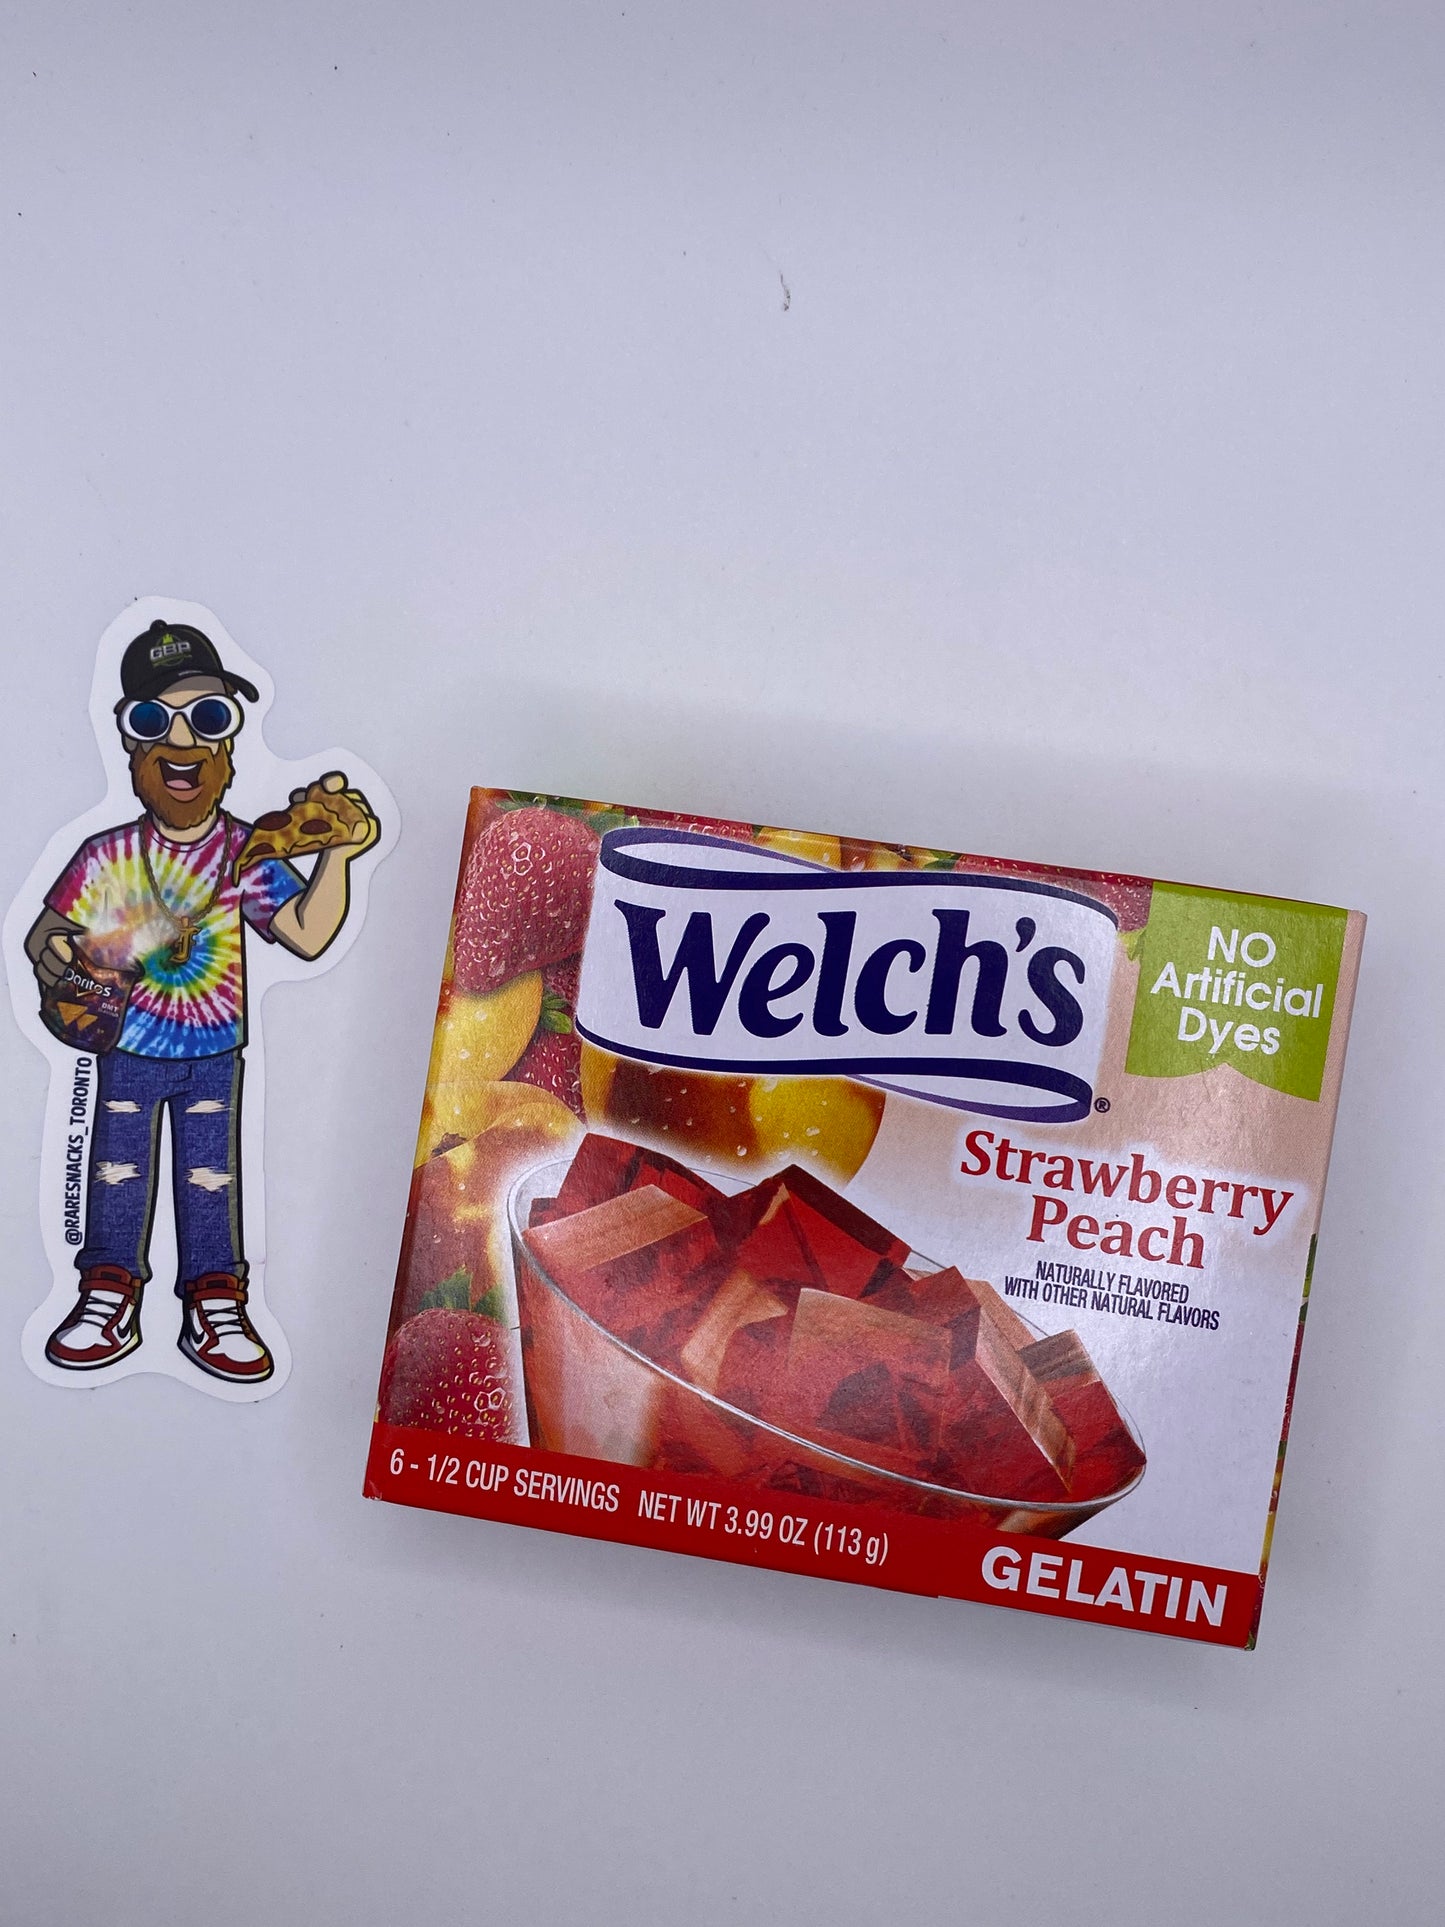 Welch’s Strawberry Peach Gelatin